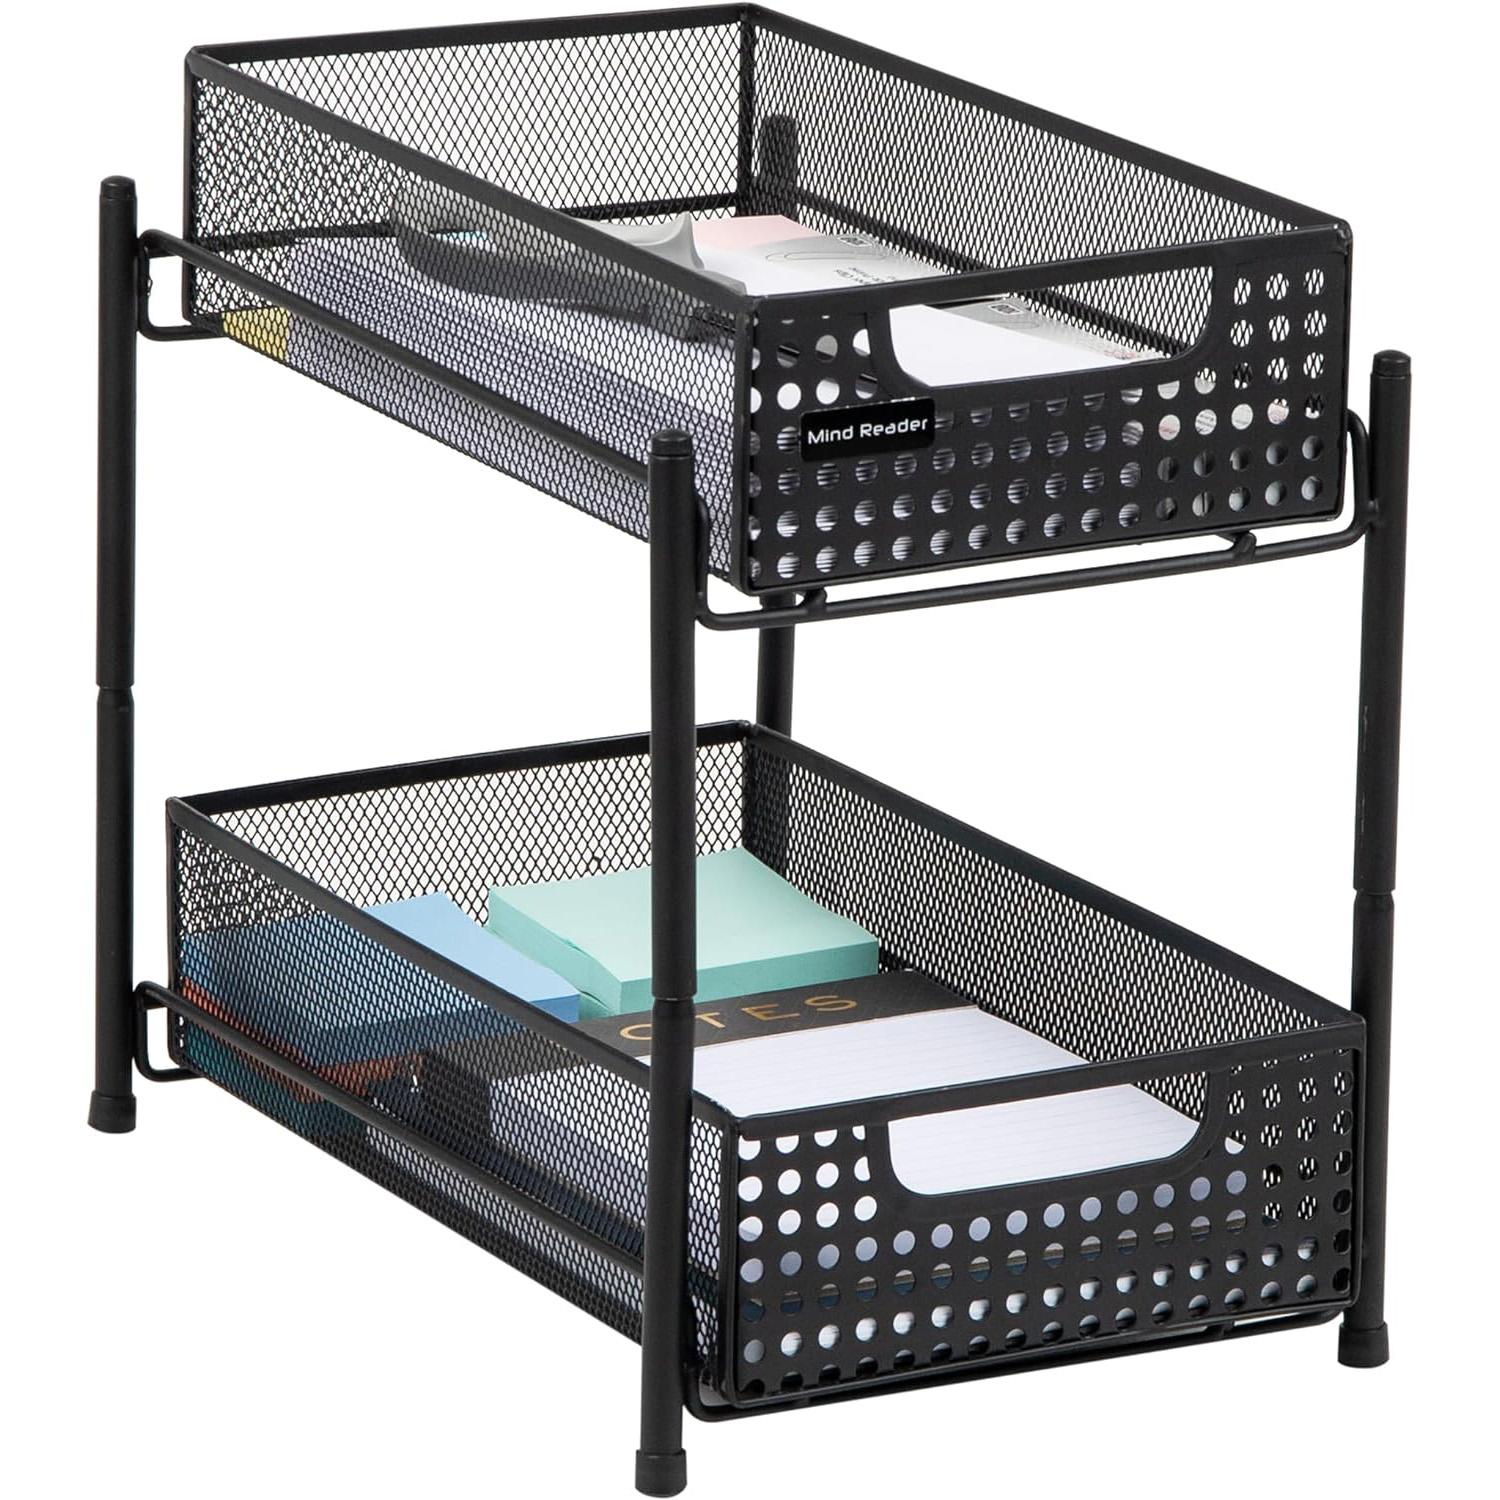 Mind Reader 2-Tier Heavy Duty Mesh Storage Baskets Organizer for $10.27